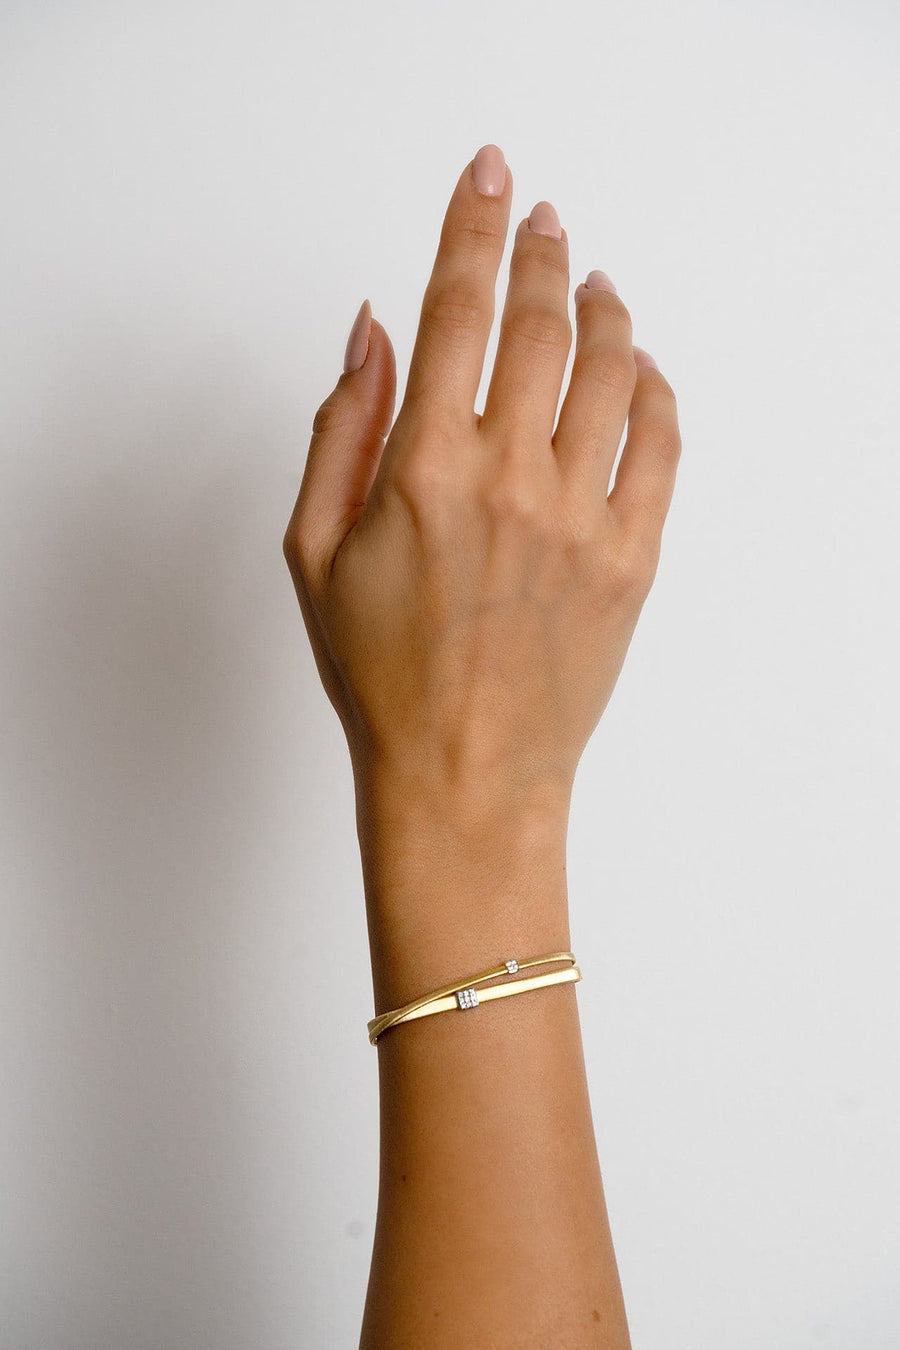 Margo Bicego® 'Masai' Yellow Gold Crossover Bracelet - Skeie's Jewelers